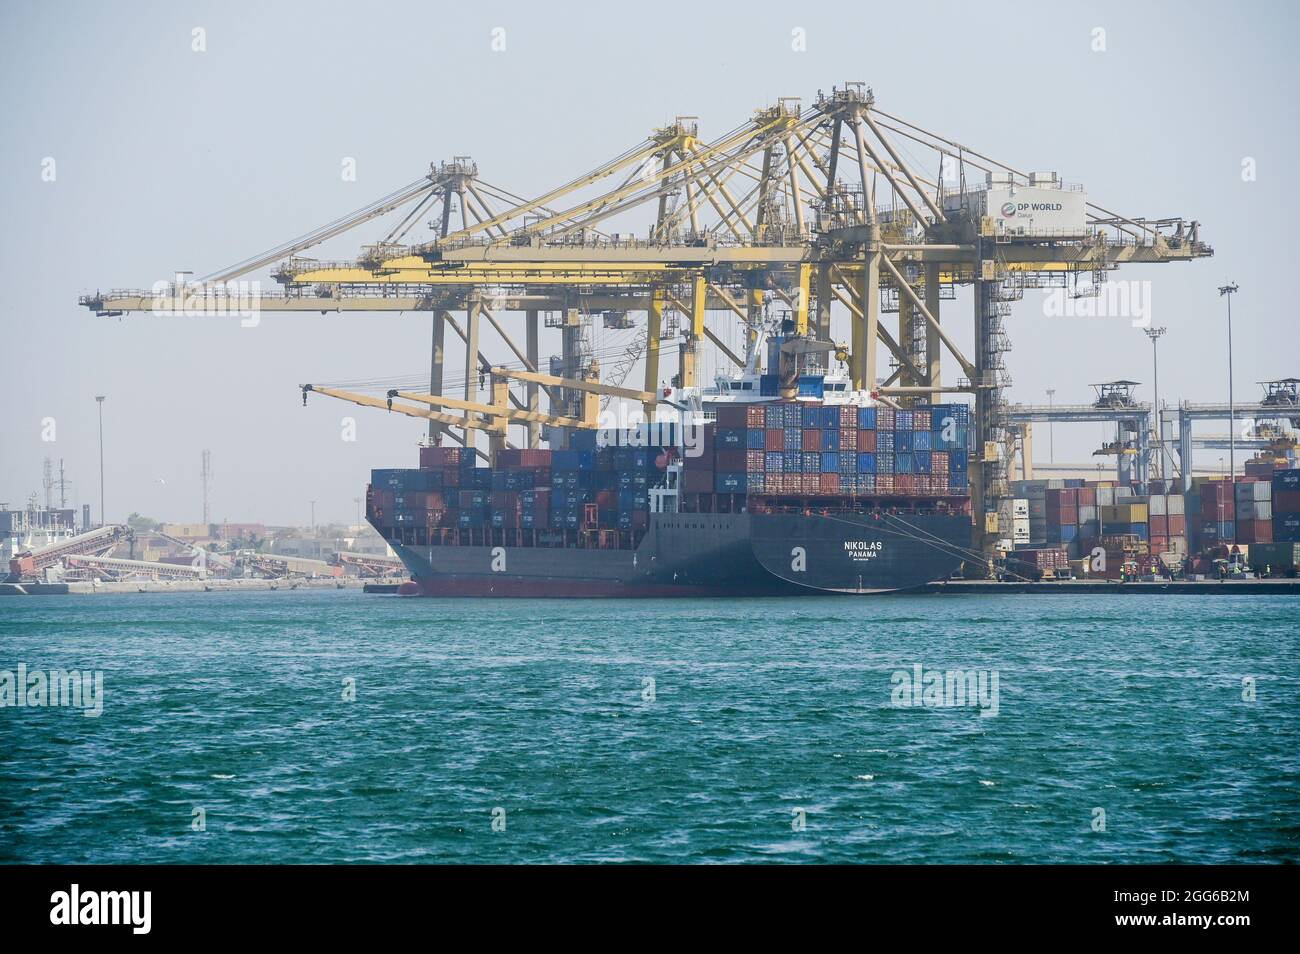 Senegal, Dakar, Hafen, DP World Dakar - Terminal à Conteneur, Container Terminal, Containerschiff Nikolas in Panama registriert, DP World ist einer der weltweit größten Hafenbetreiber. Haupteigentümer ist Dubai World, die staatliche Investmentgruppe der Vereinigten Arabischen Emirato. Foto Stock